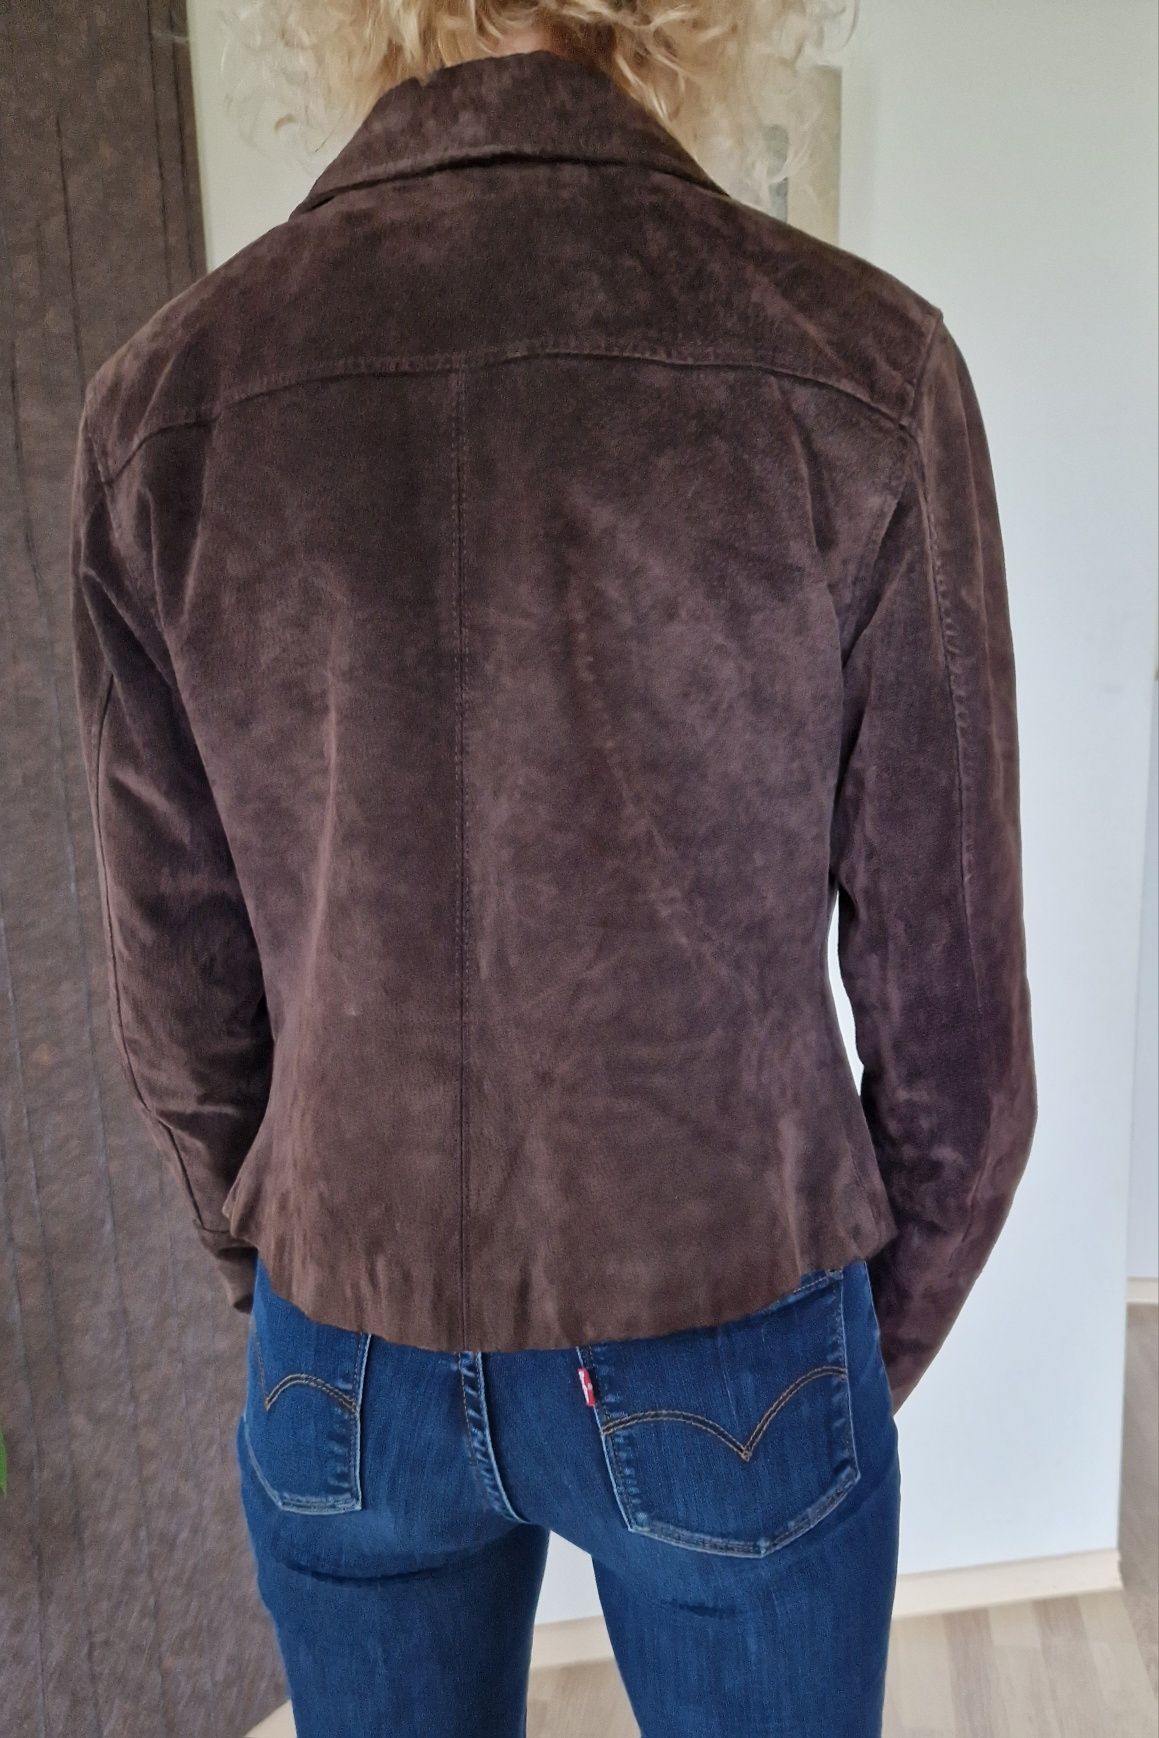 Kurtka skórzana, M  38 zamszowa real leather